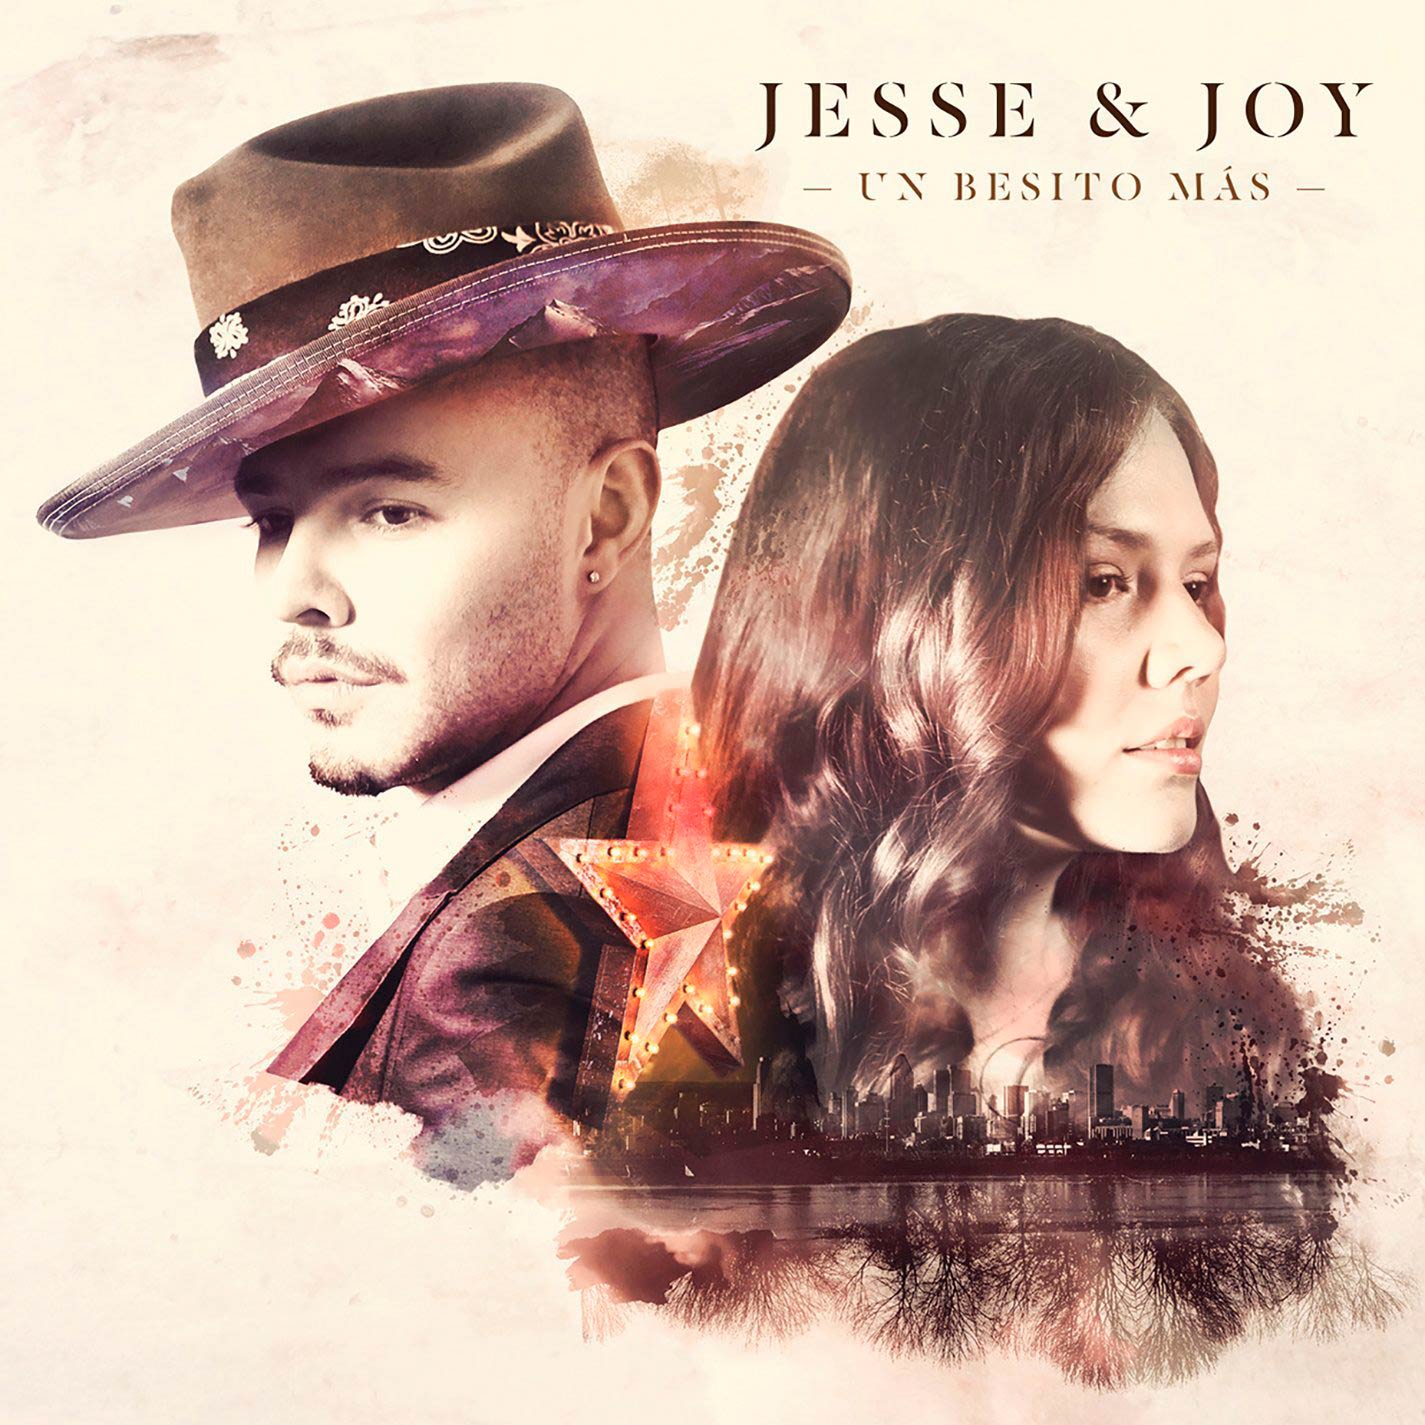 Jesse & Joy: Un besito más, la portada del disco